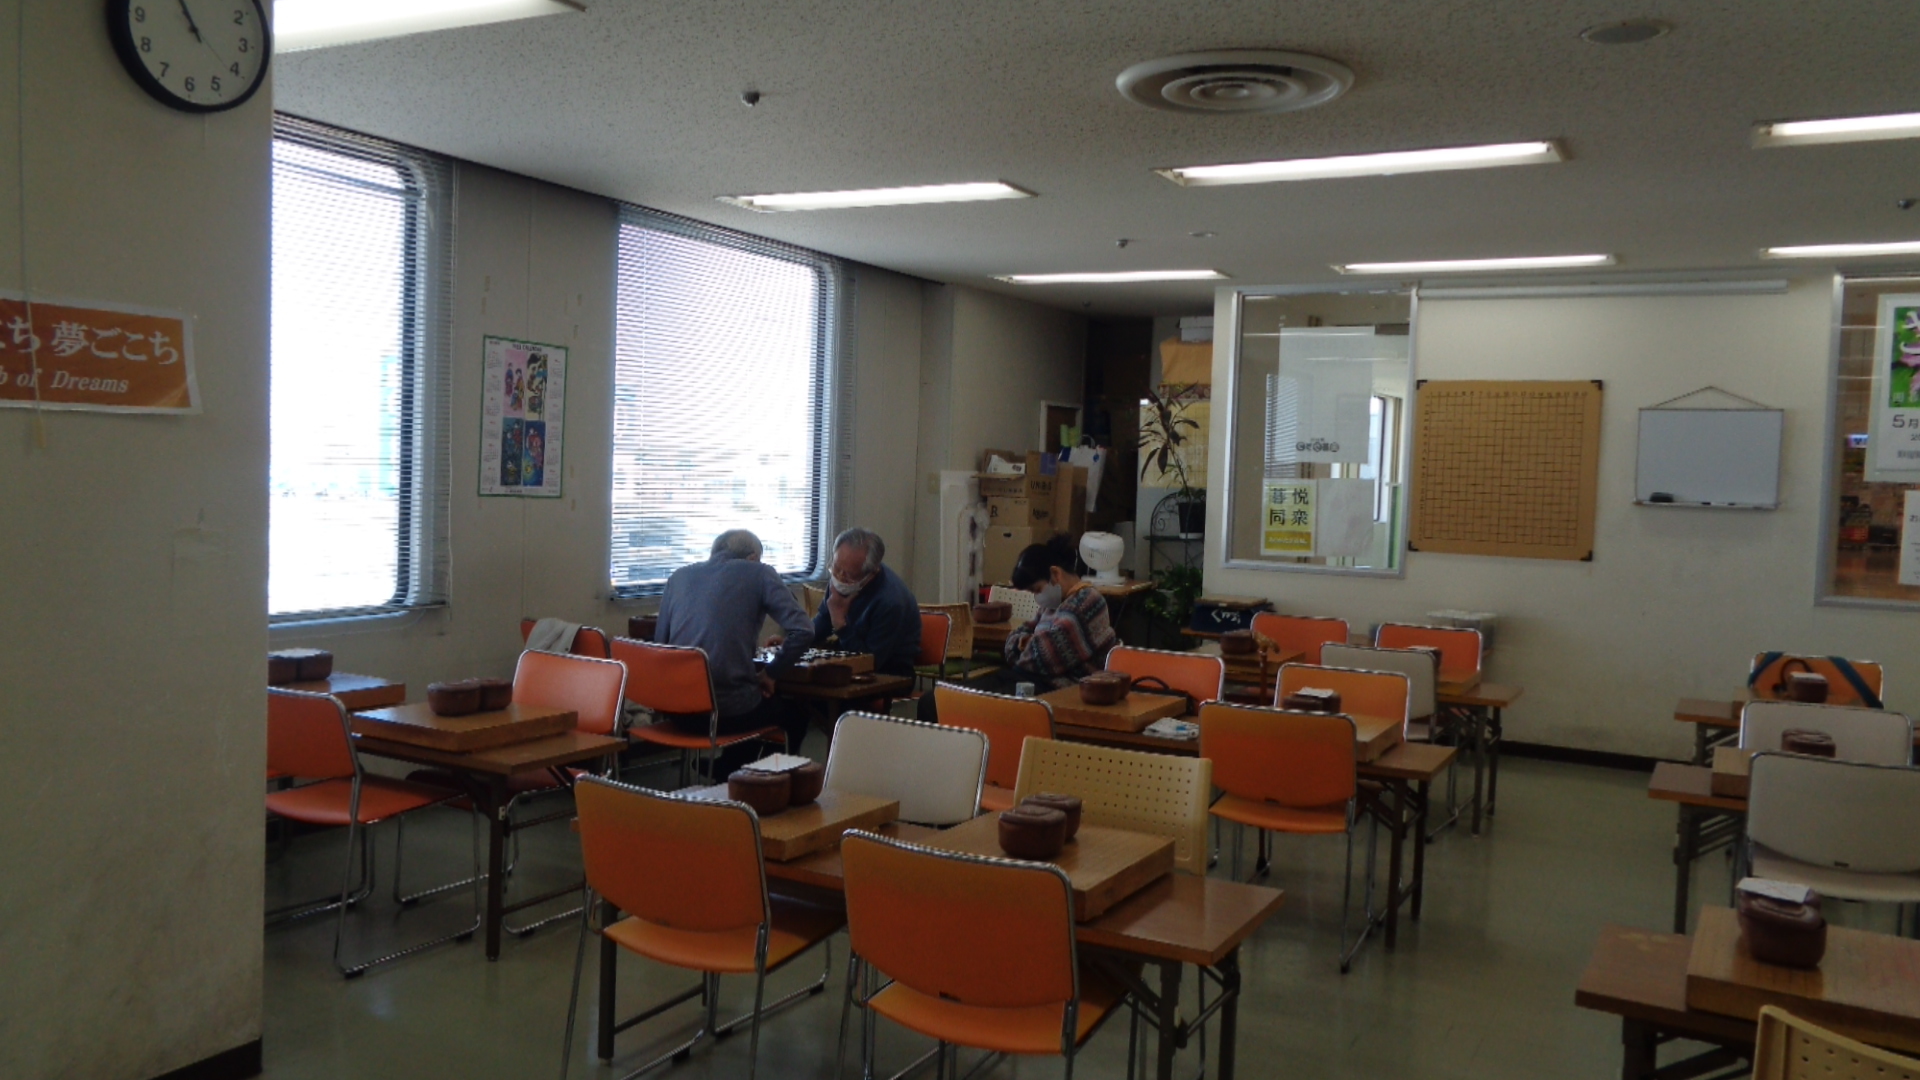 須藤先生の囲碁未来教室です。